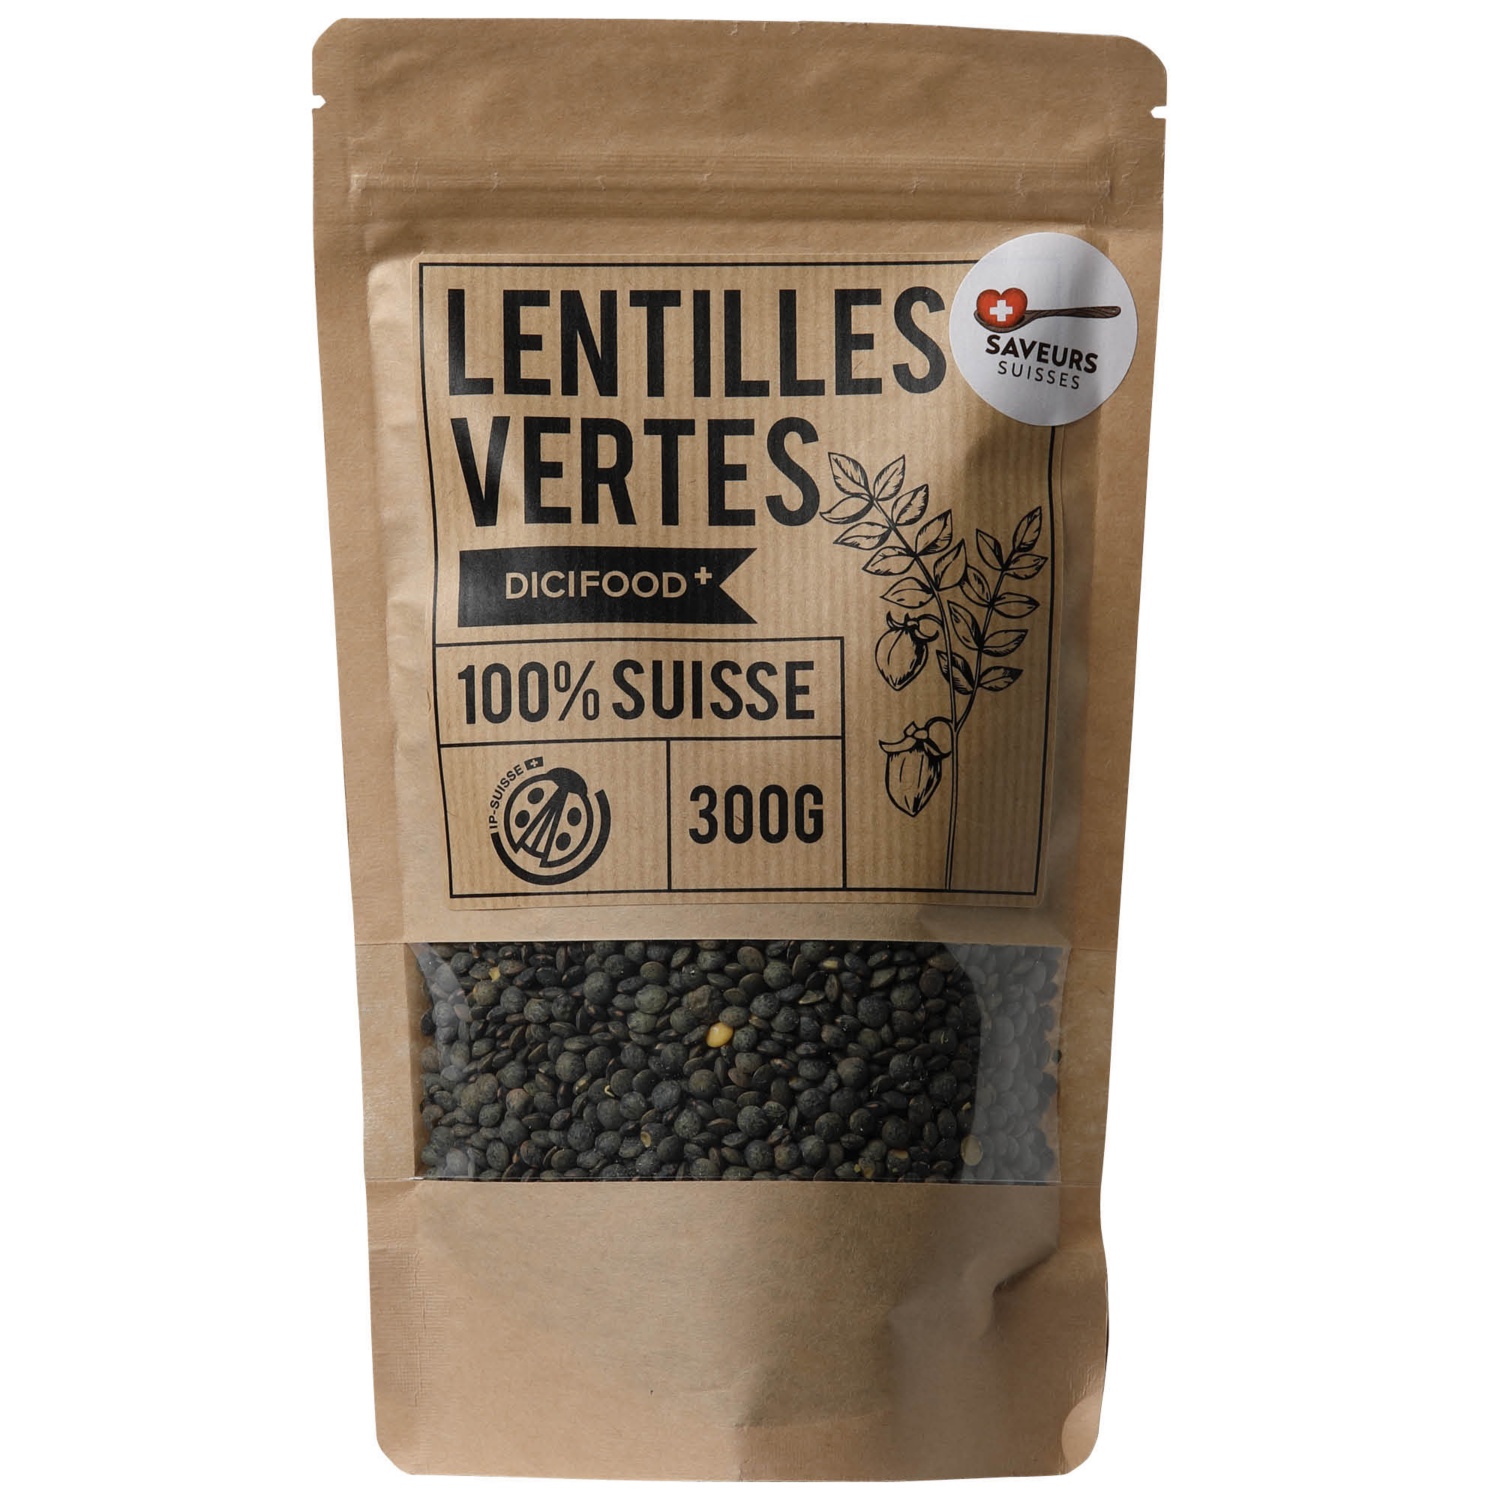 SAVEURs SUISSES Lentilles vertes